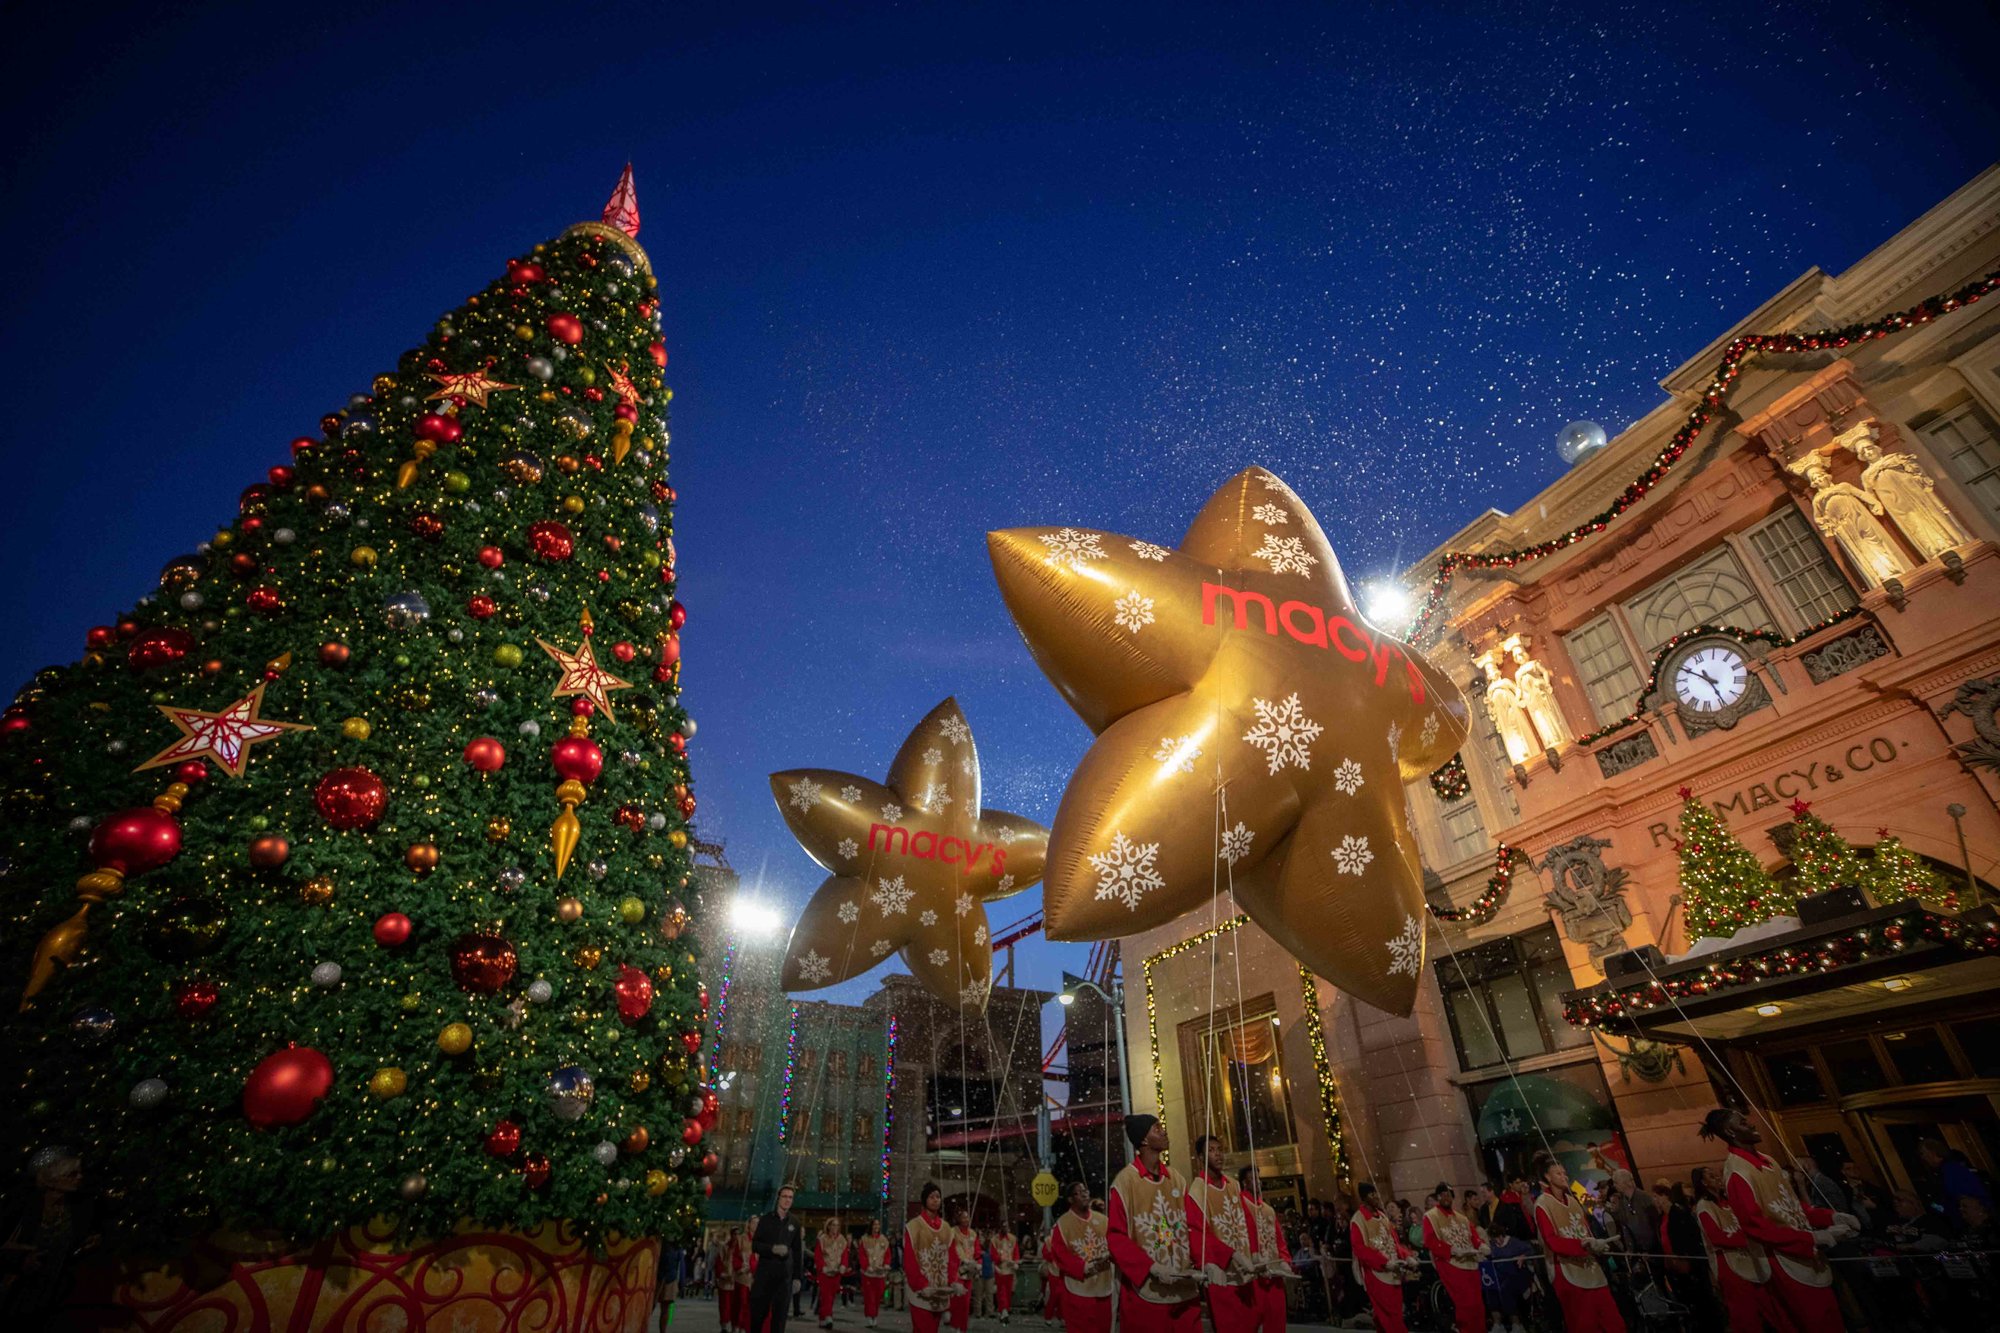 universal christmas tree and big gold macys star balloon